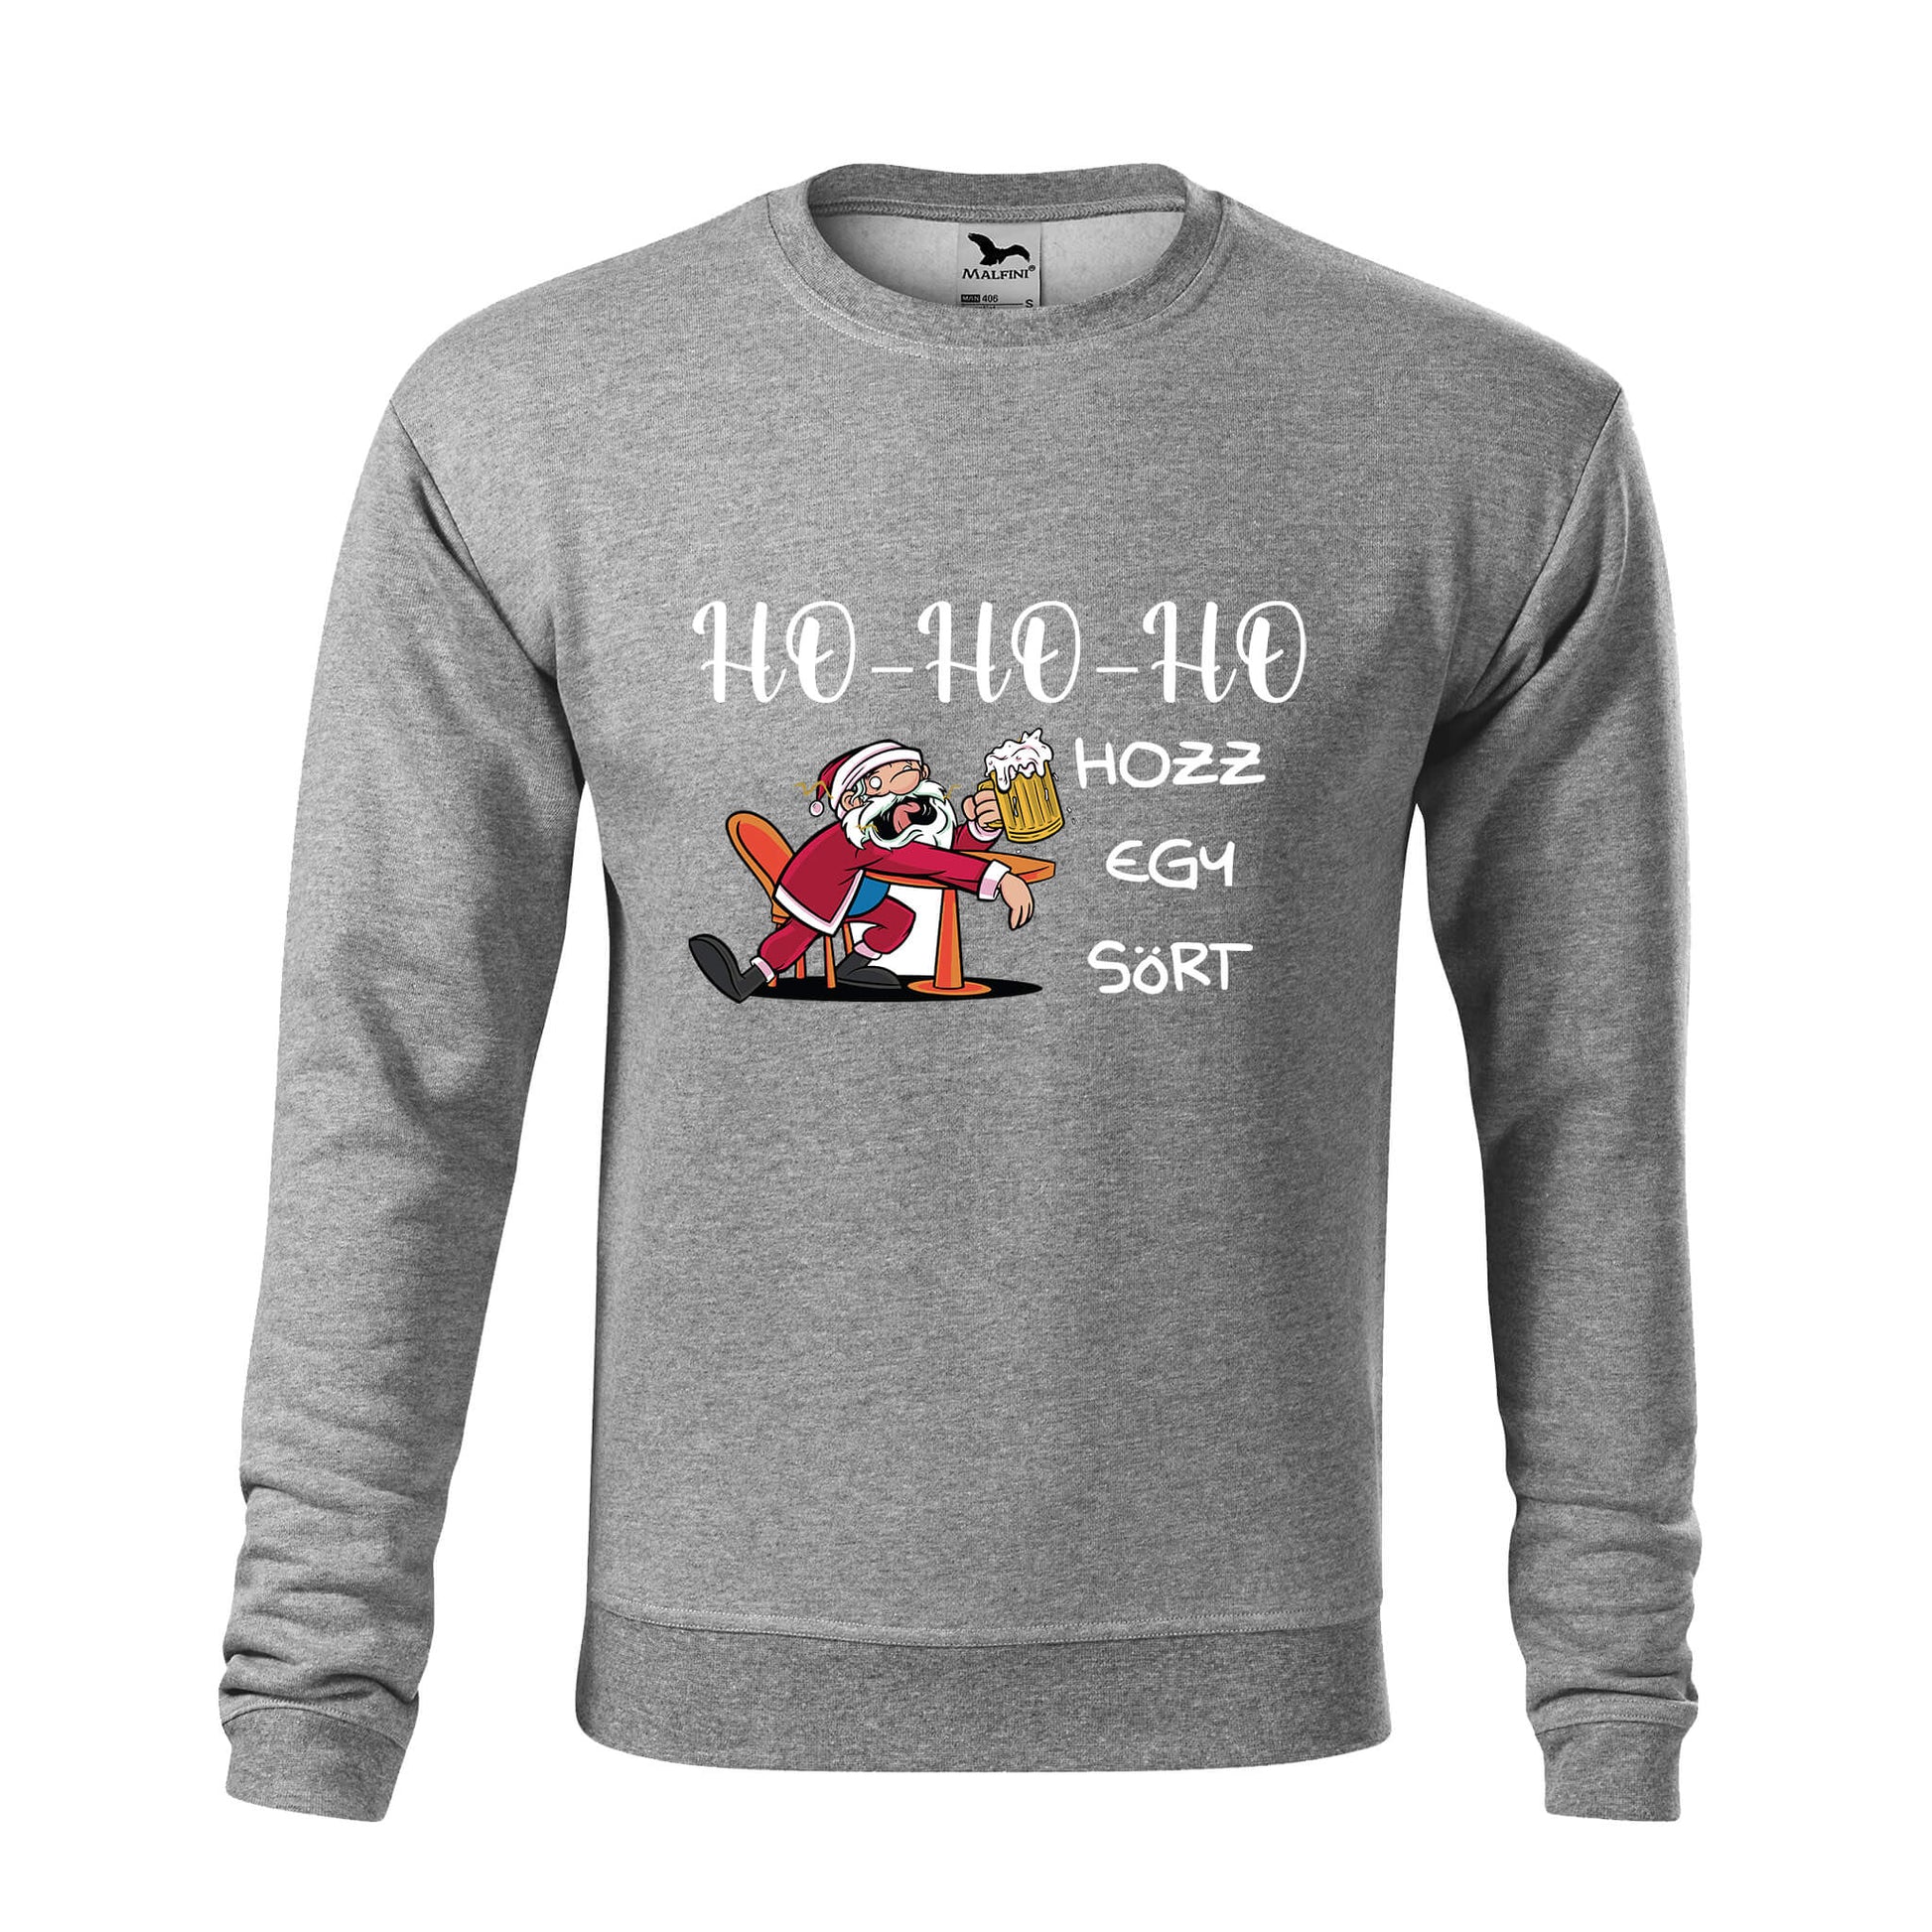 Ho-ho-ho hozz egy sort sweatshirt - rvdesignprint